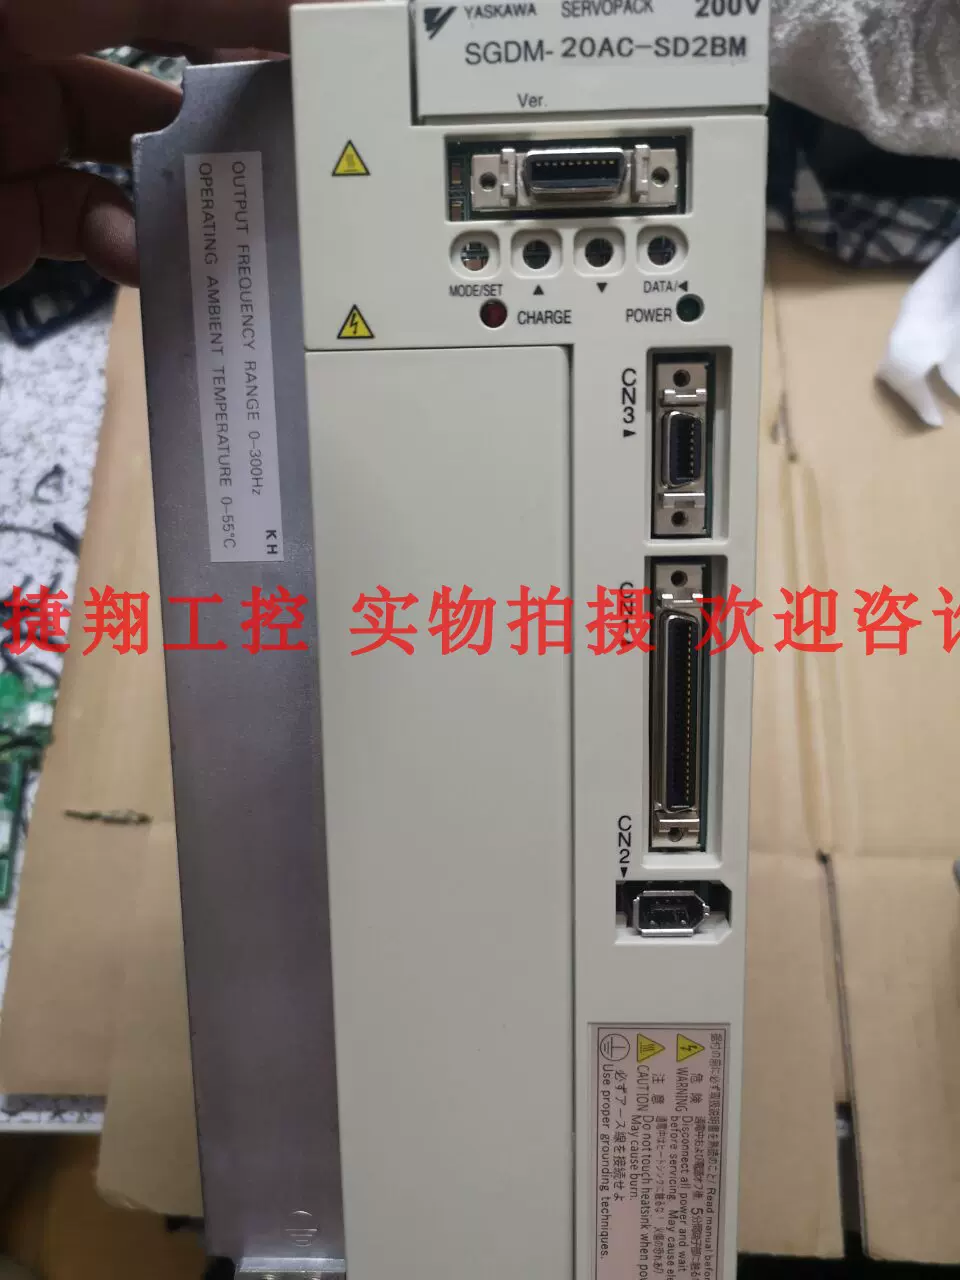 全新SGDM-20AC-SD2BM安川原裝現貨質保一年詢價-Taobao